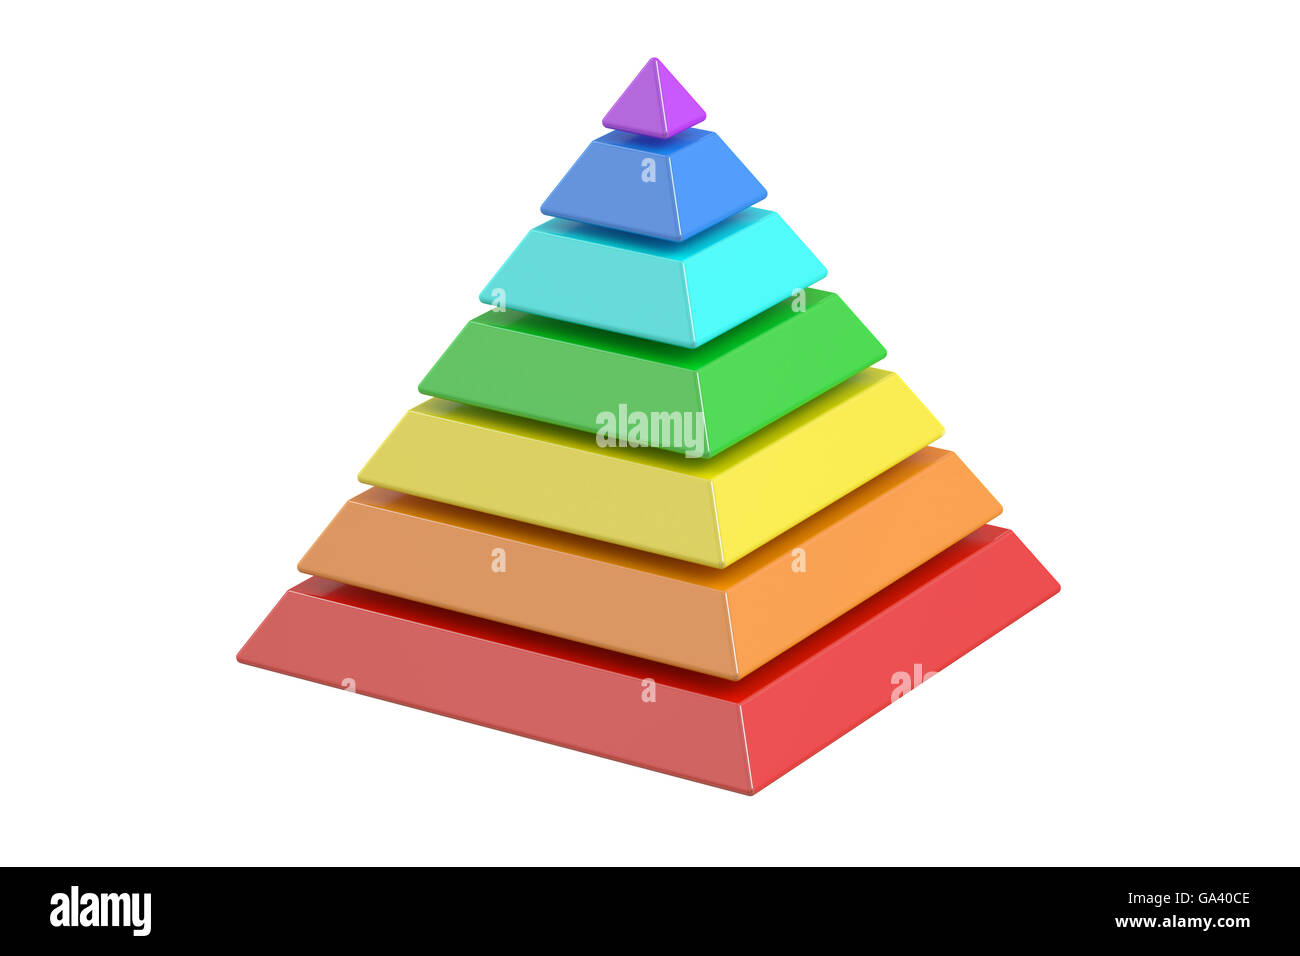 Пирамида цвета